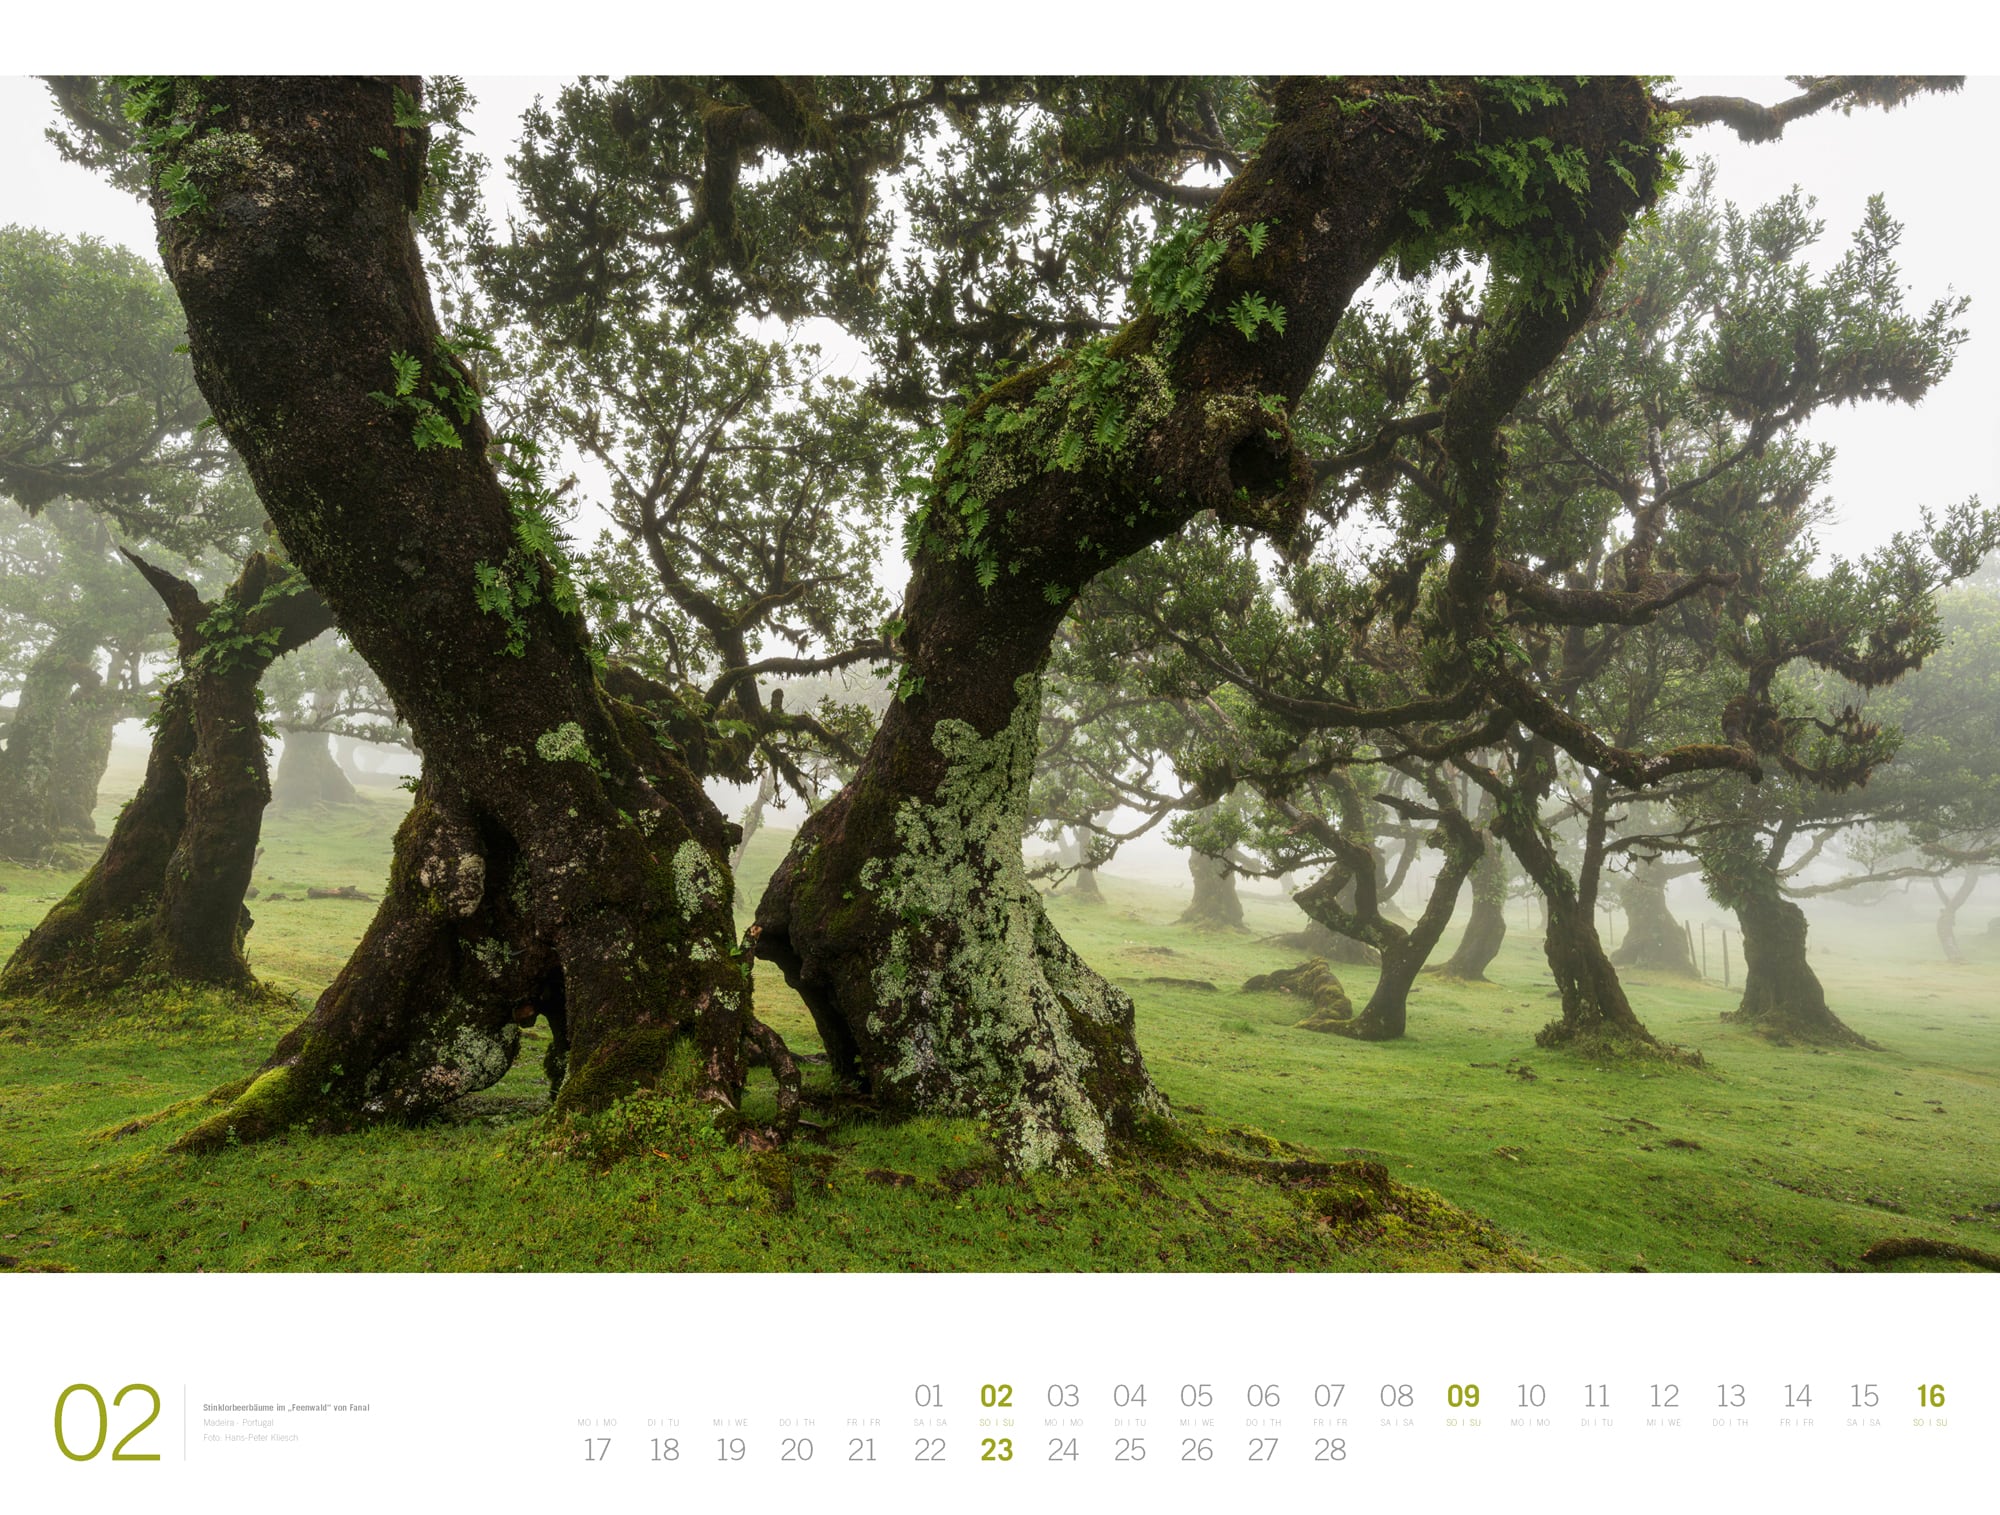 Ackermann Calendar Forest - Gallery 2025 - Inside View 02